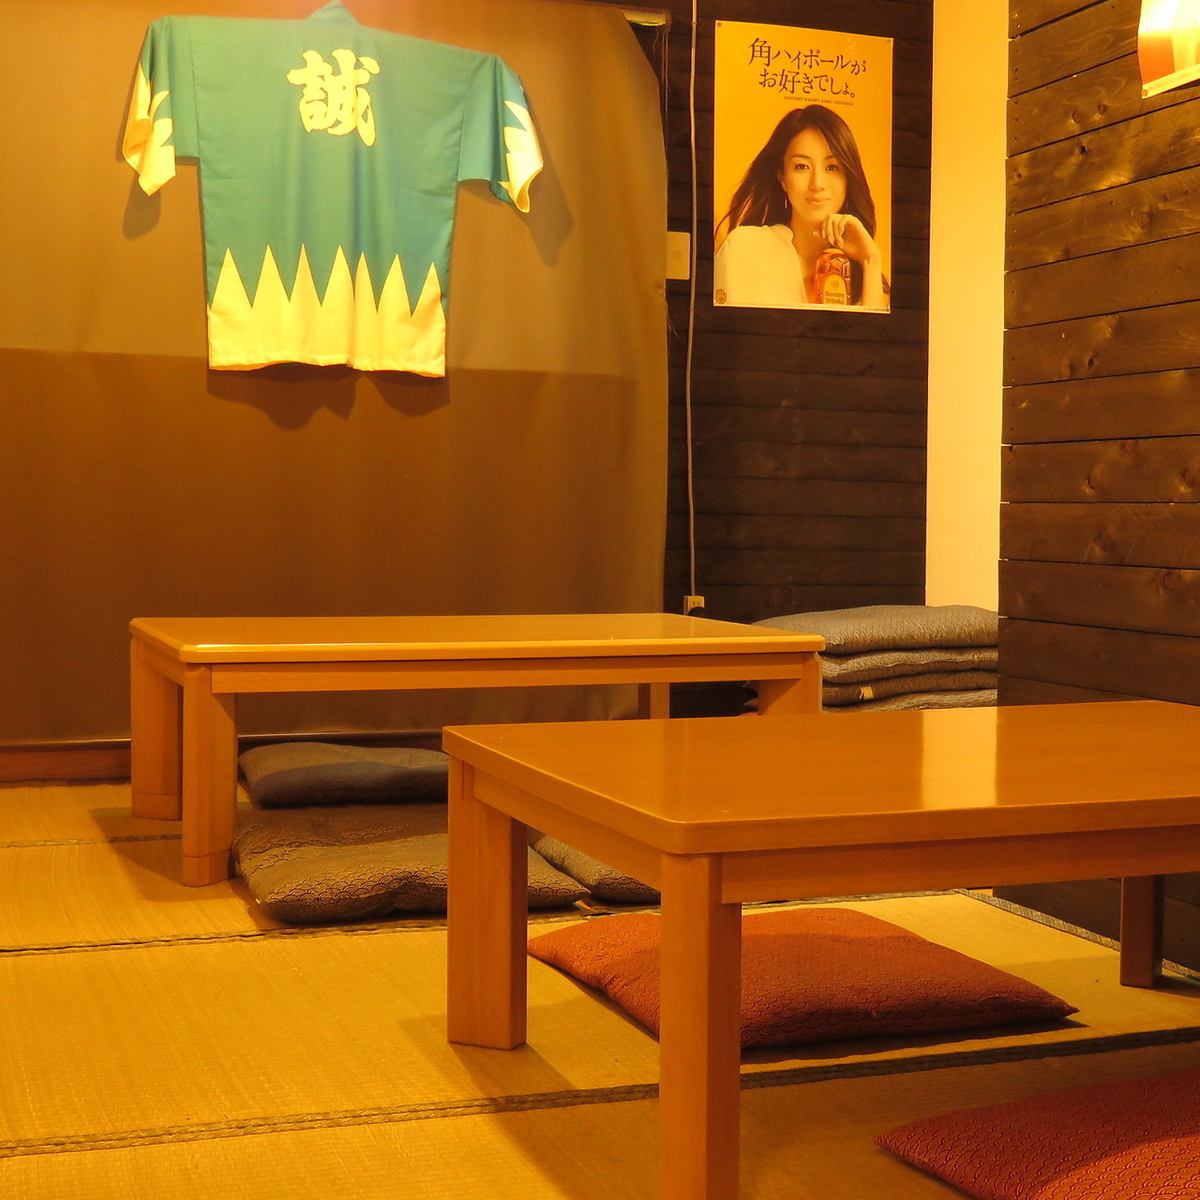 京都老房子的内部装修◆温暖轻松的空间♪